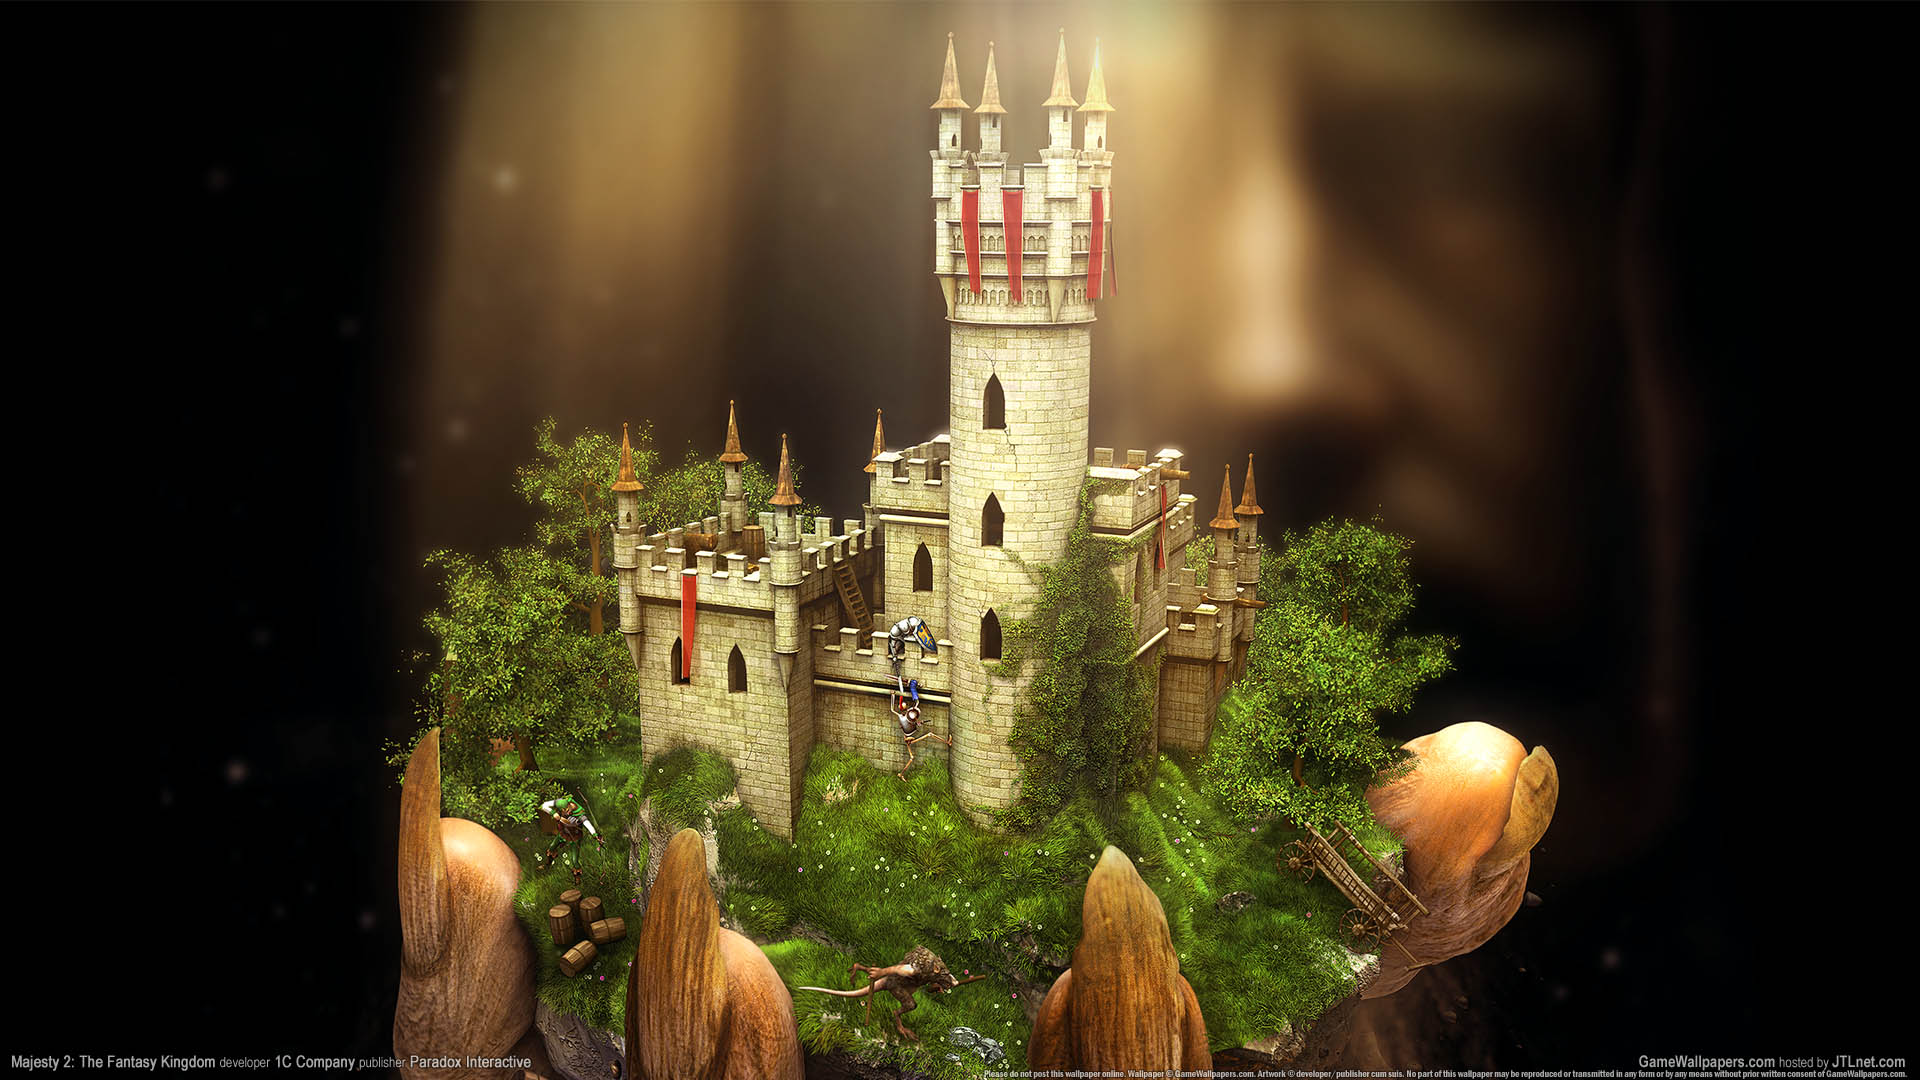 Majesty 2: The Fantasy Kingdom Sim wallpaper 02 1920x1080